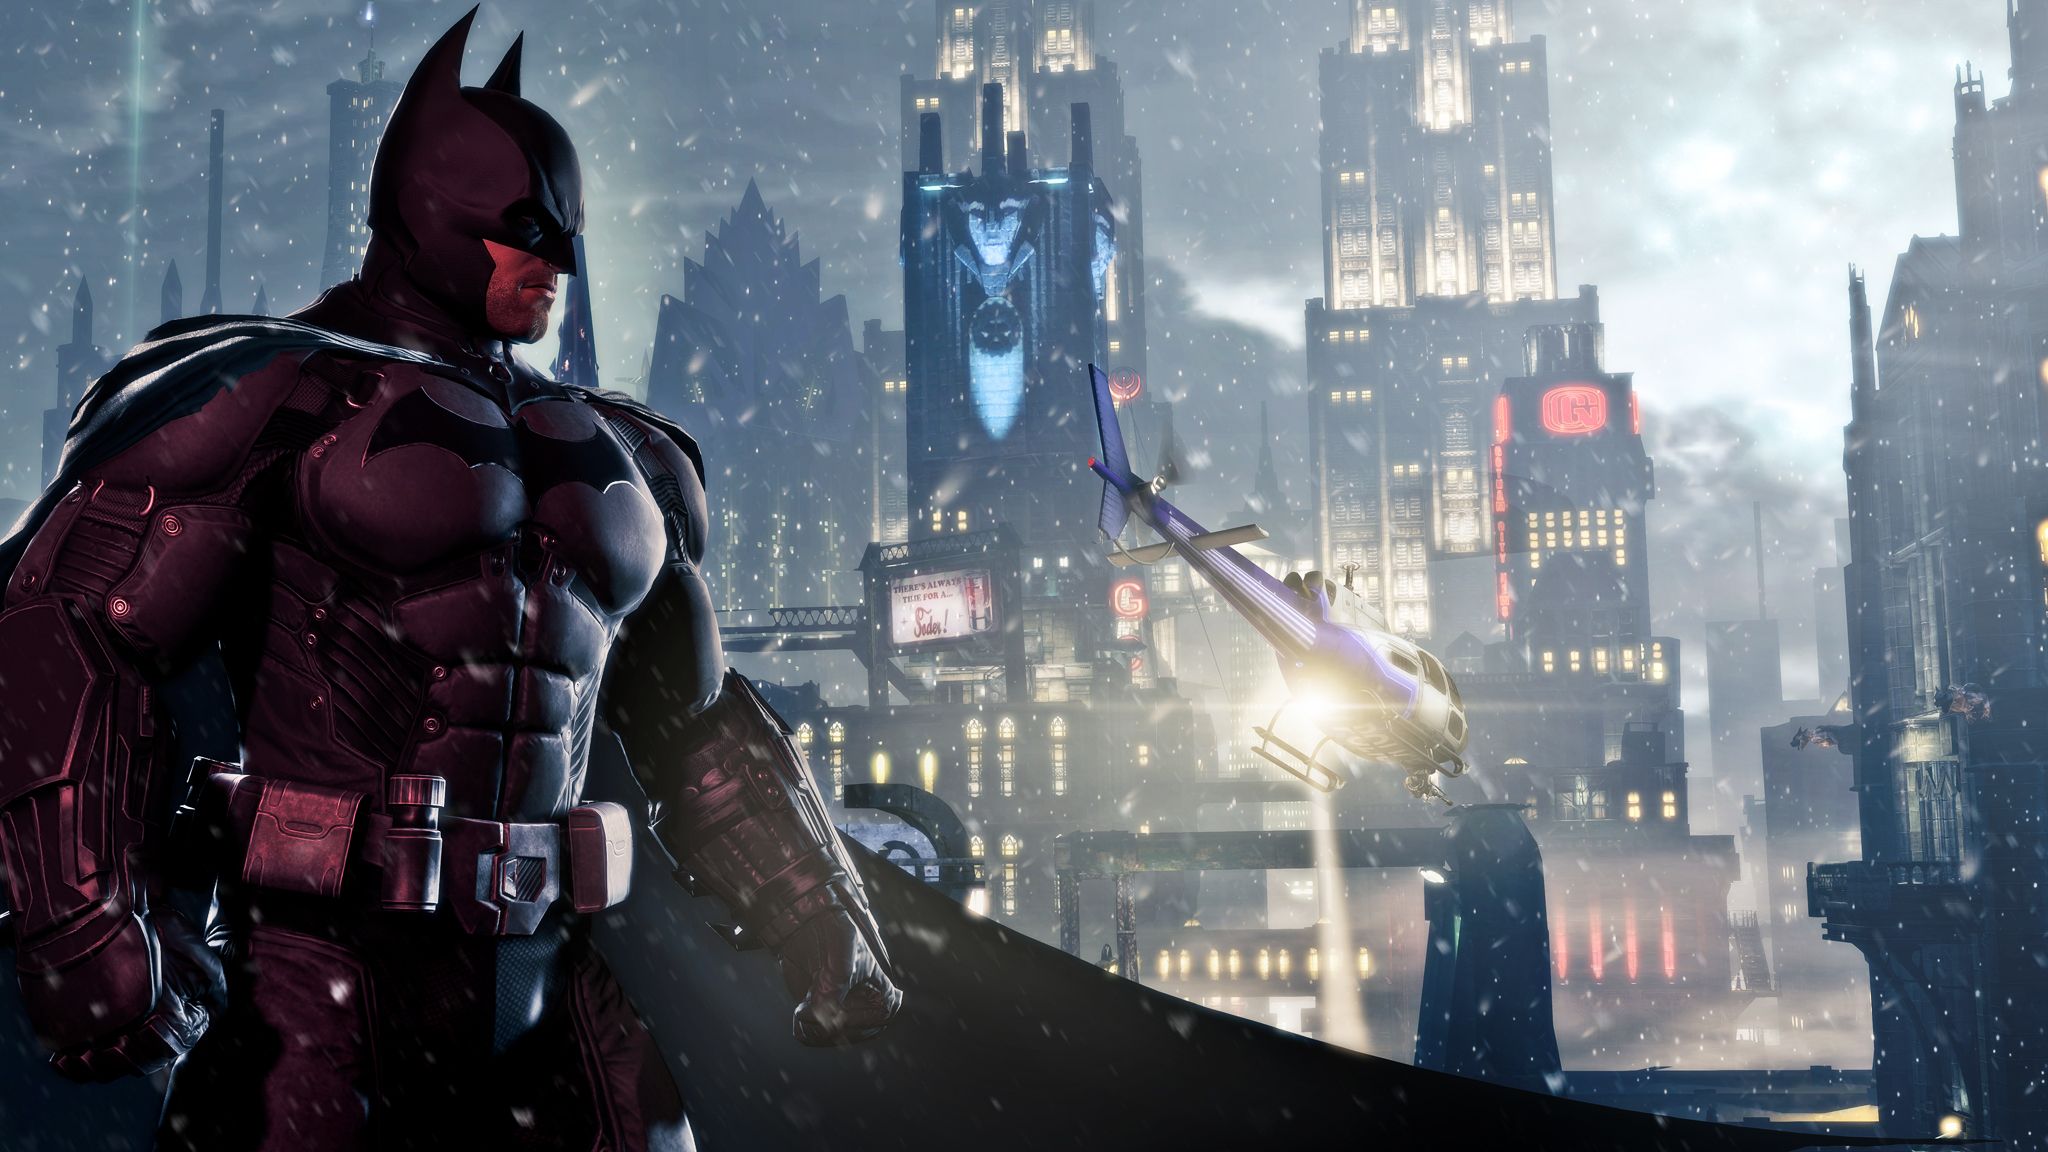 HD wallpaper, Origins, Batman, Arkham, 2013